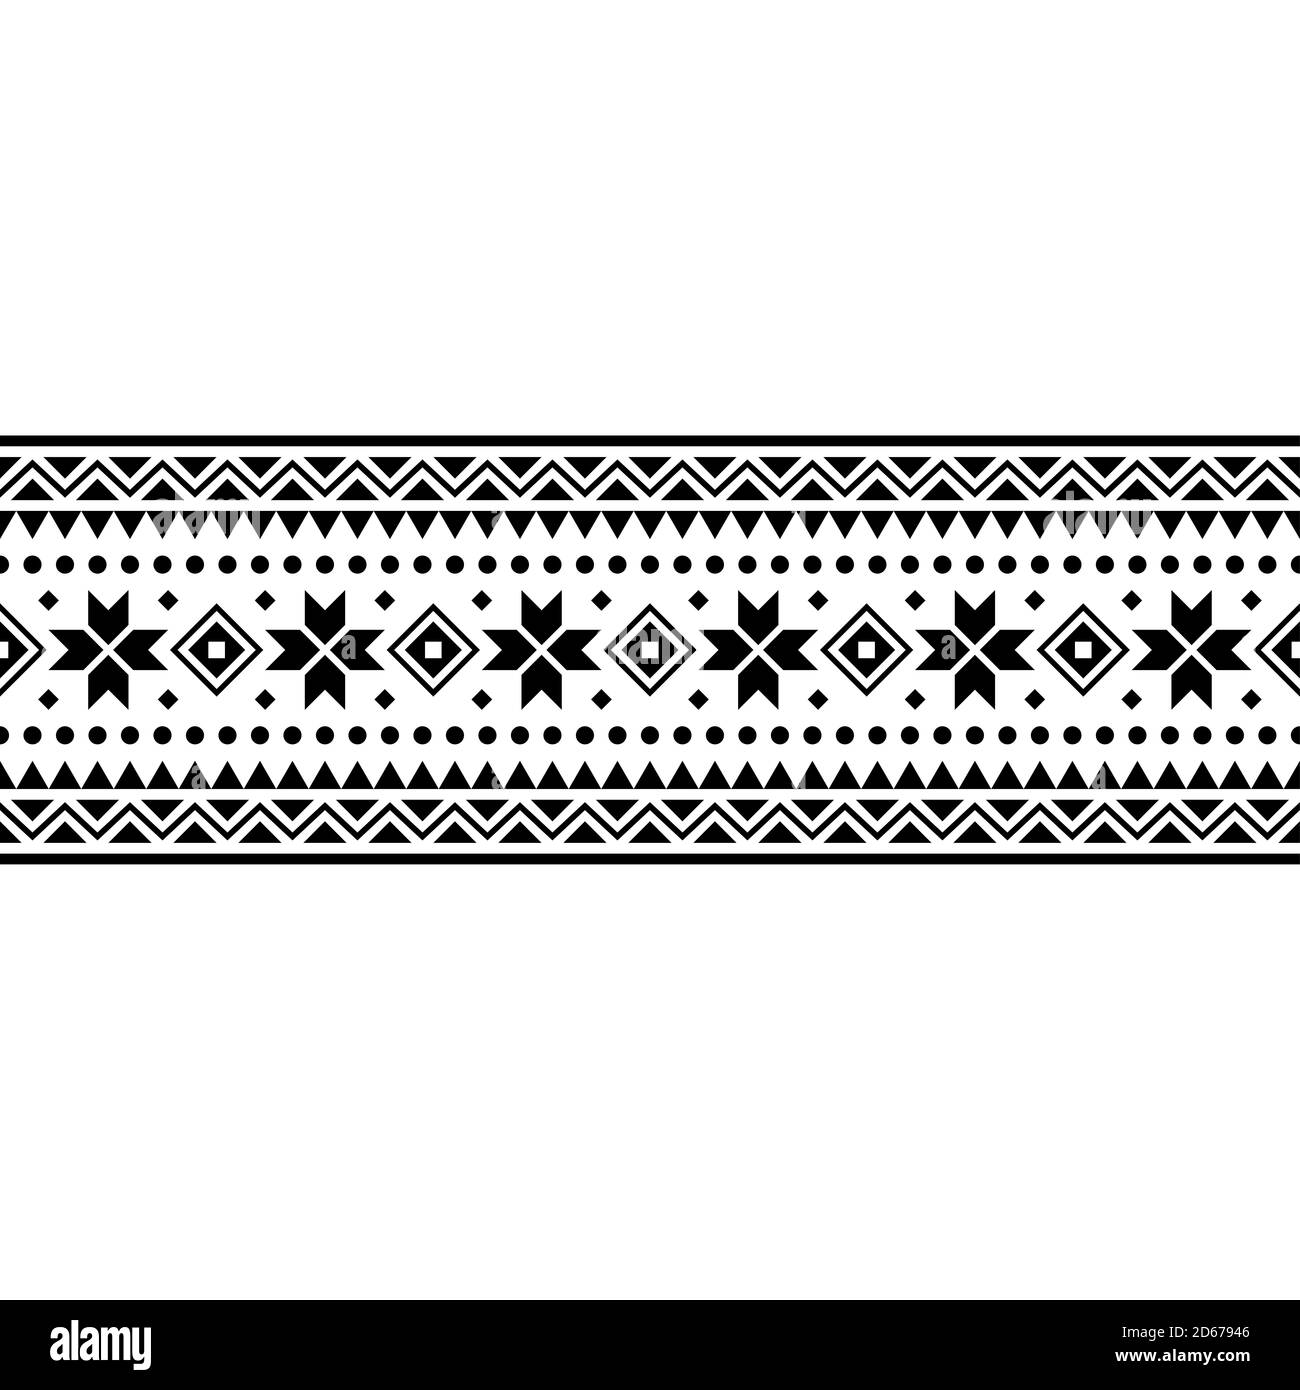 Frohe Weihnachten Veranstaltung ethnischen Muster. Tribal Weihnachten Design Illustration Vektor. weihnachten Design in schwarz und weiß Farbe gesetzt. Monochrom Stockfoto